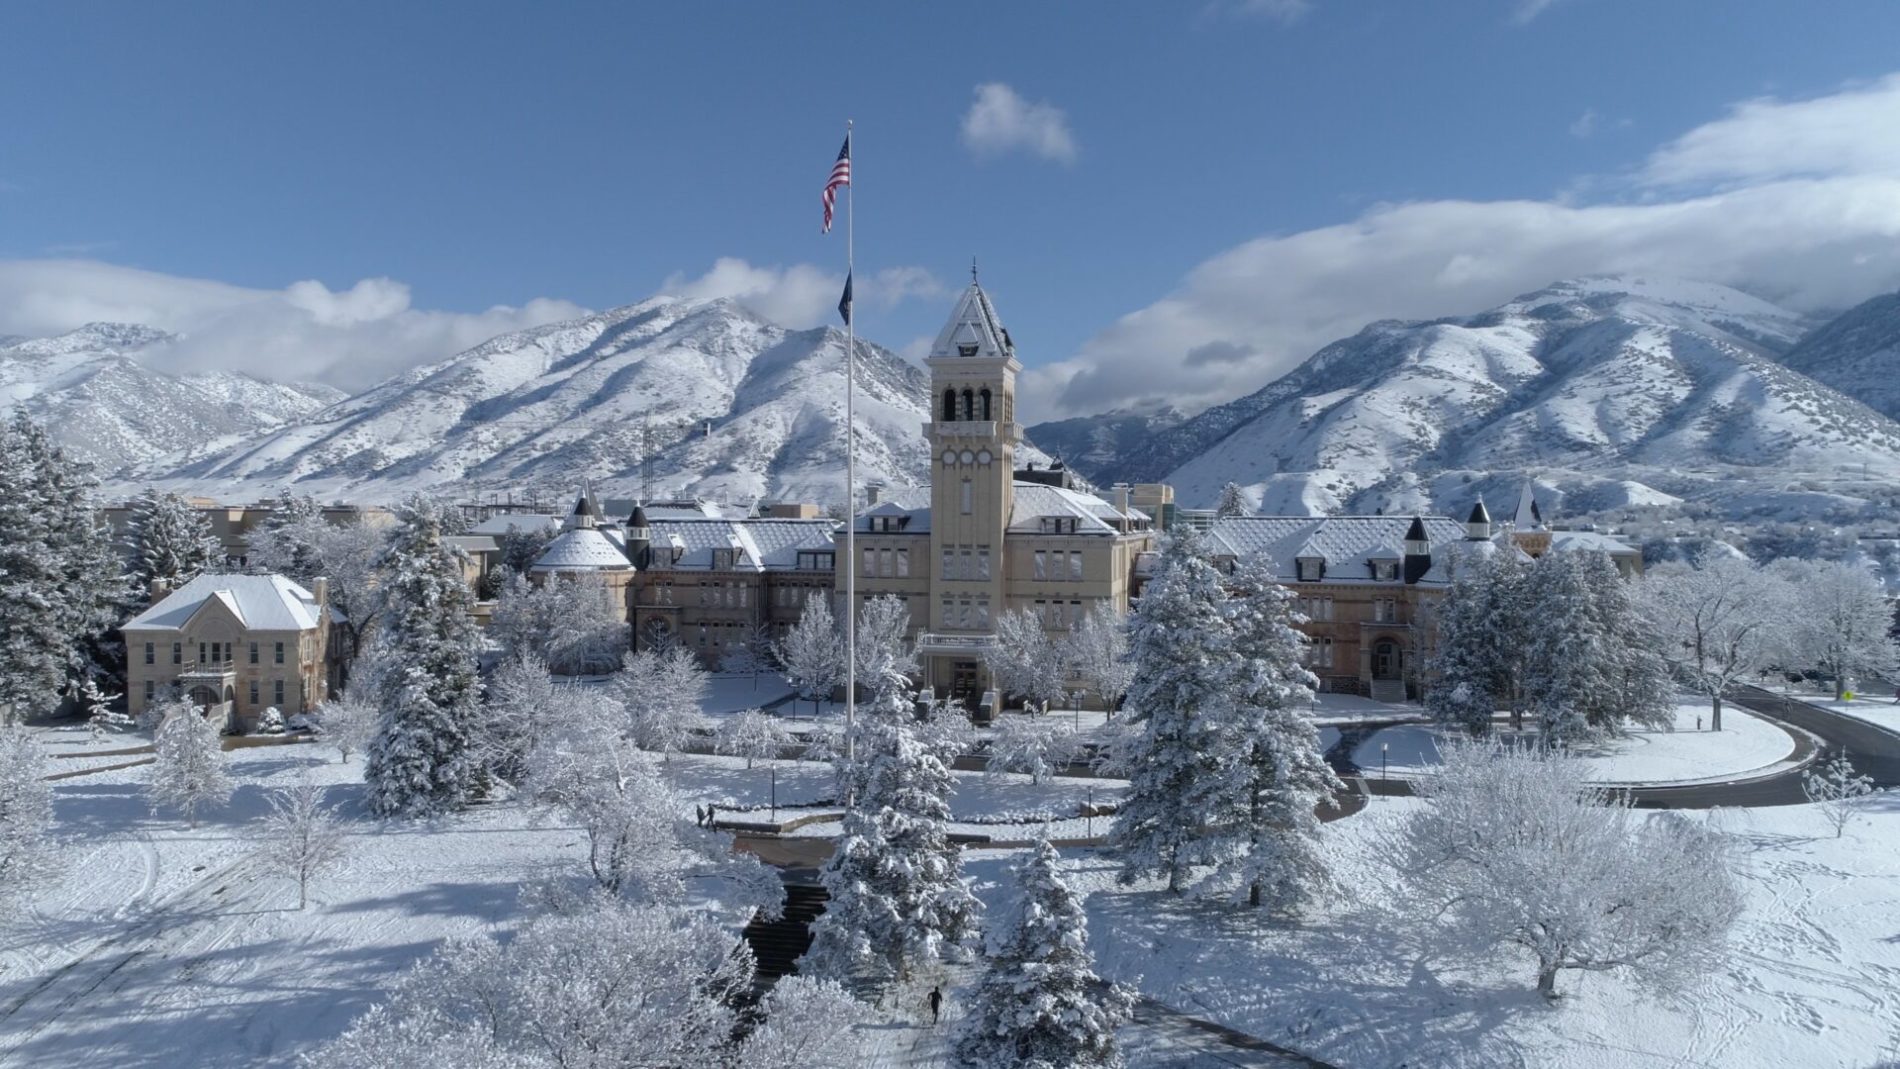 Đại học Utah State vào mùa đông